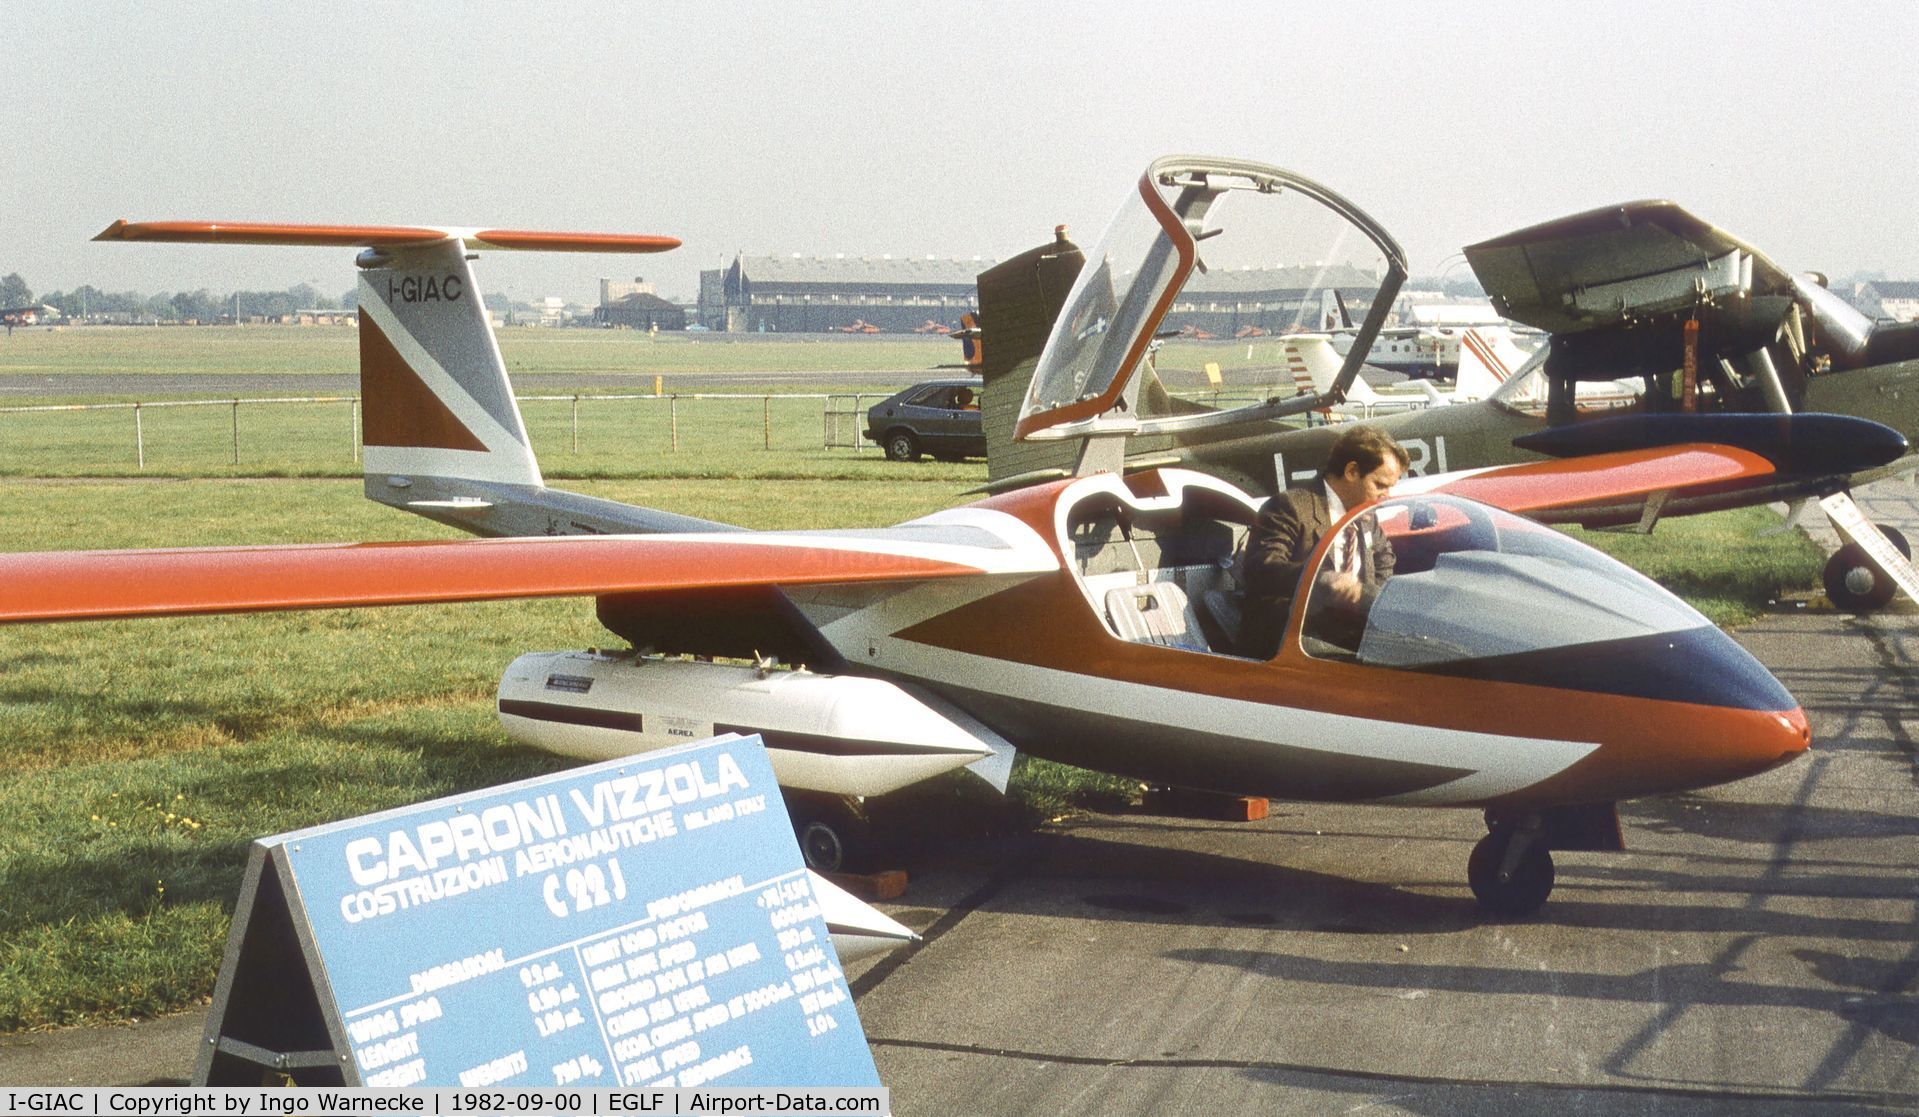 I-GIAC, Caproni Vizzola C.22J Ventura C/N 002, Caproni-Vizzola C-22J at Farnborough International 1982